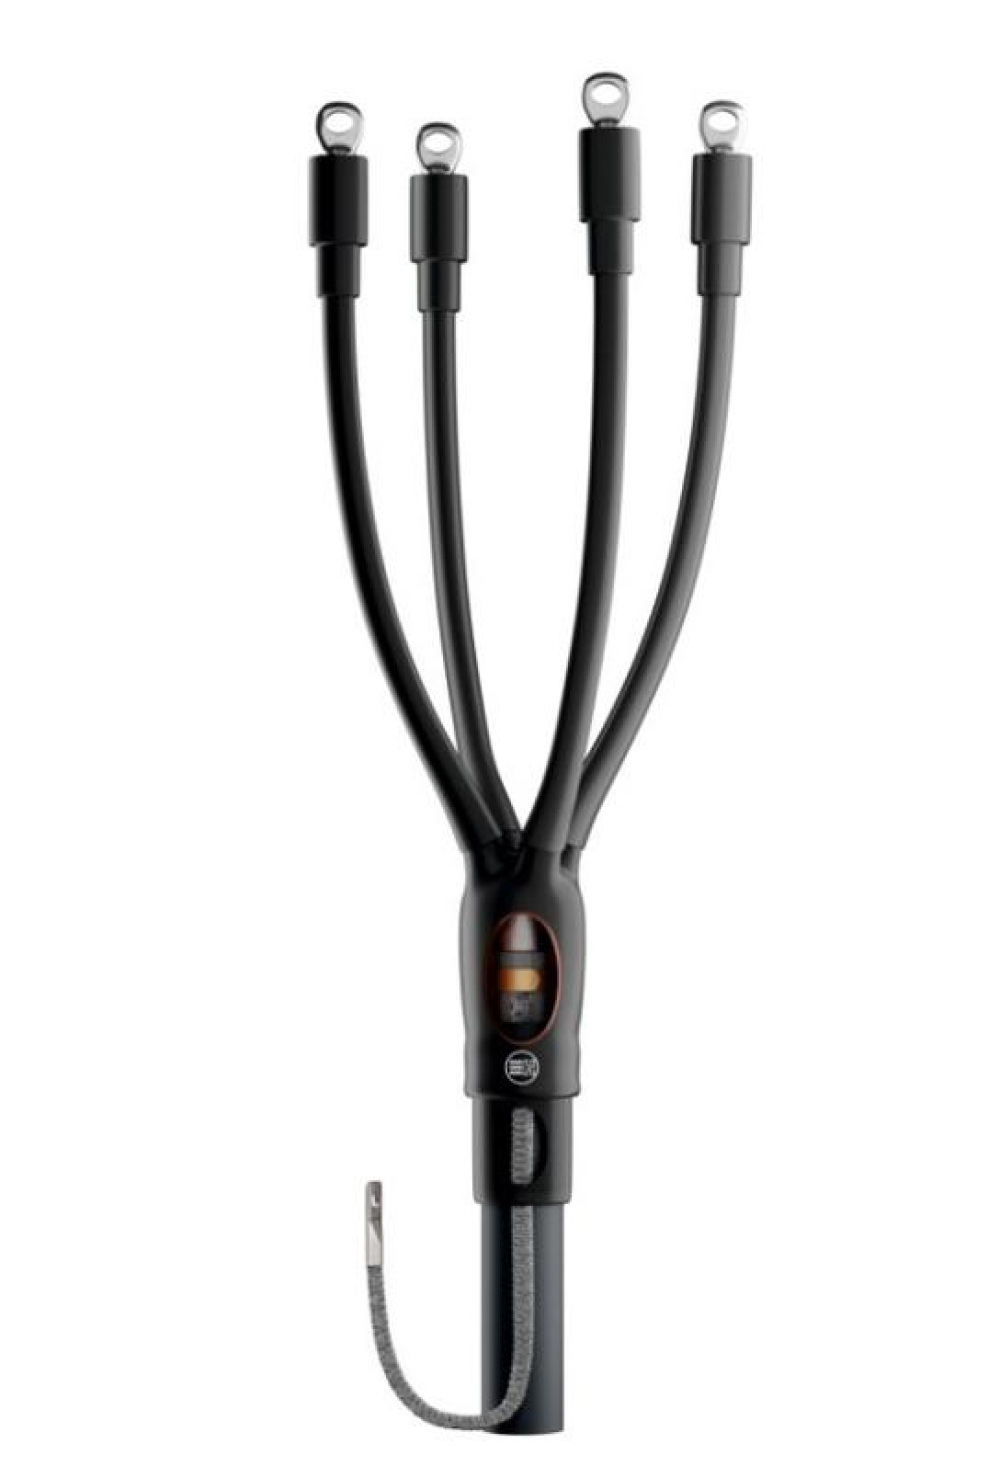 Муфта кабельная НИЛЕД HT2P-01 5х150-240 мм2 концевая, количество жил - 5, сечение жил 150-240 мм2, напряжение 1кВ, с болтовыми наконечниками с броней для кабелей с пластмассовой изоляцией